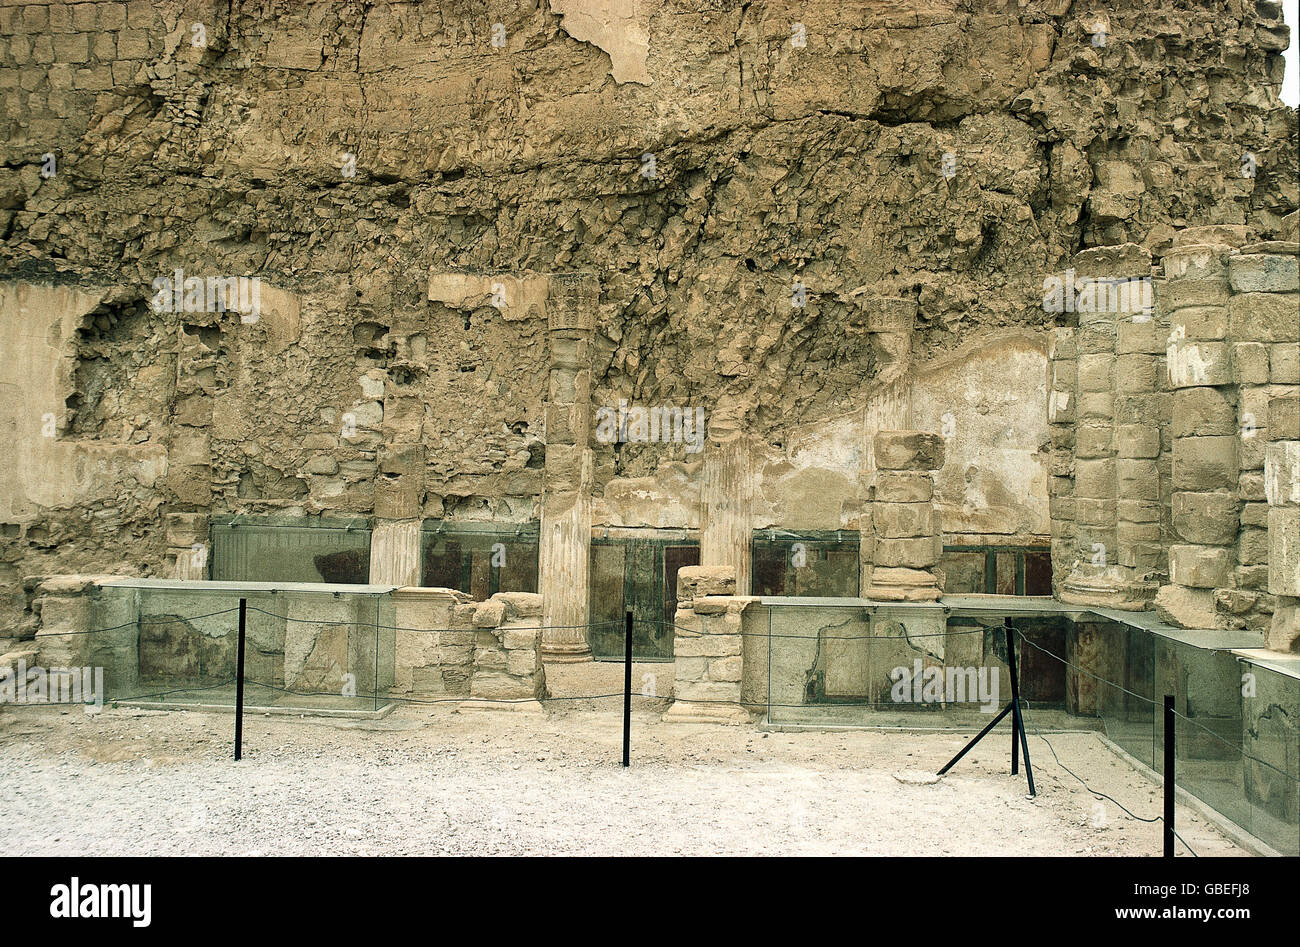 Geografia / viaggio, Israele, Masada, fortezza, costruita: 37 - 31 AC sotto Re Erode i, distrutta dai Romani 73 d.C., rovina, diritti aggiuntivi-clearences-non disponibile Foto Stock